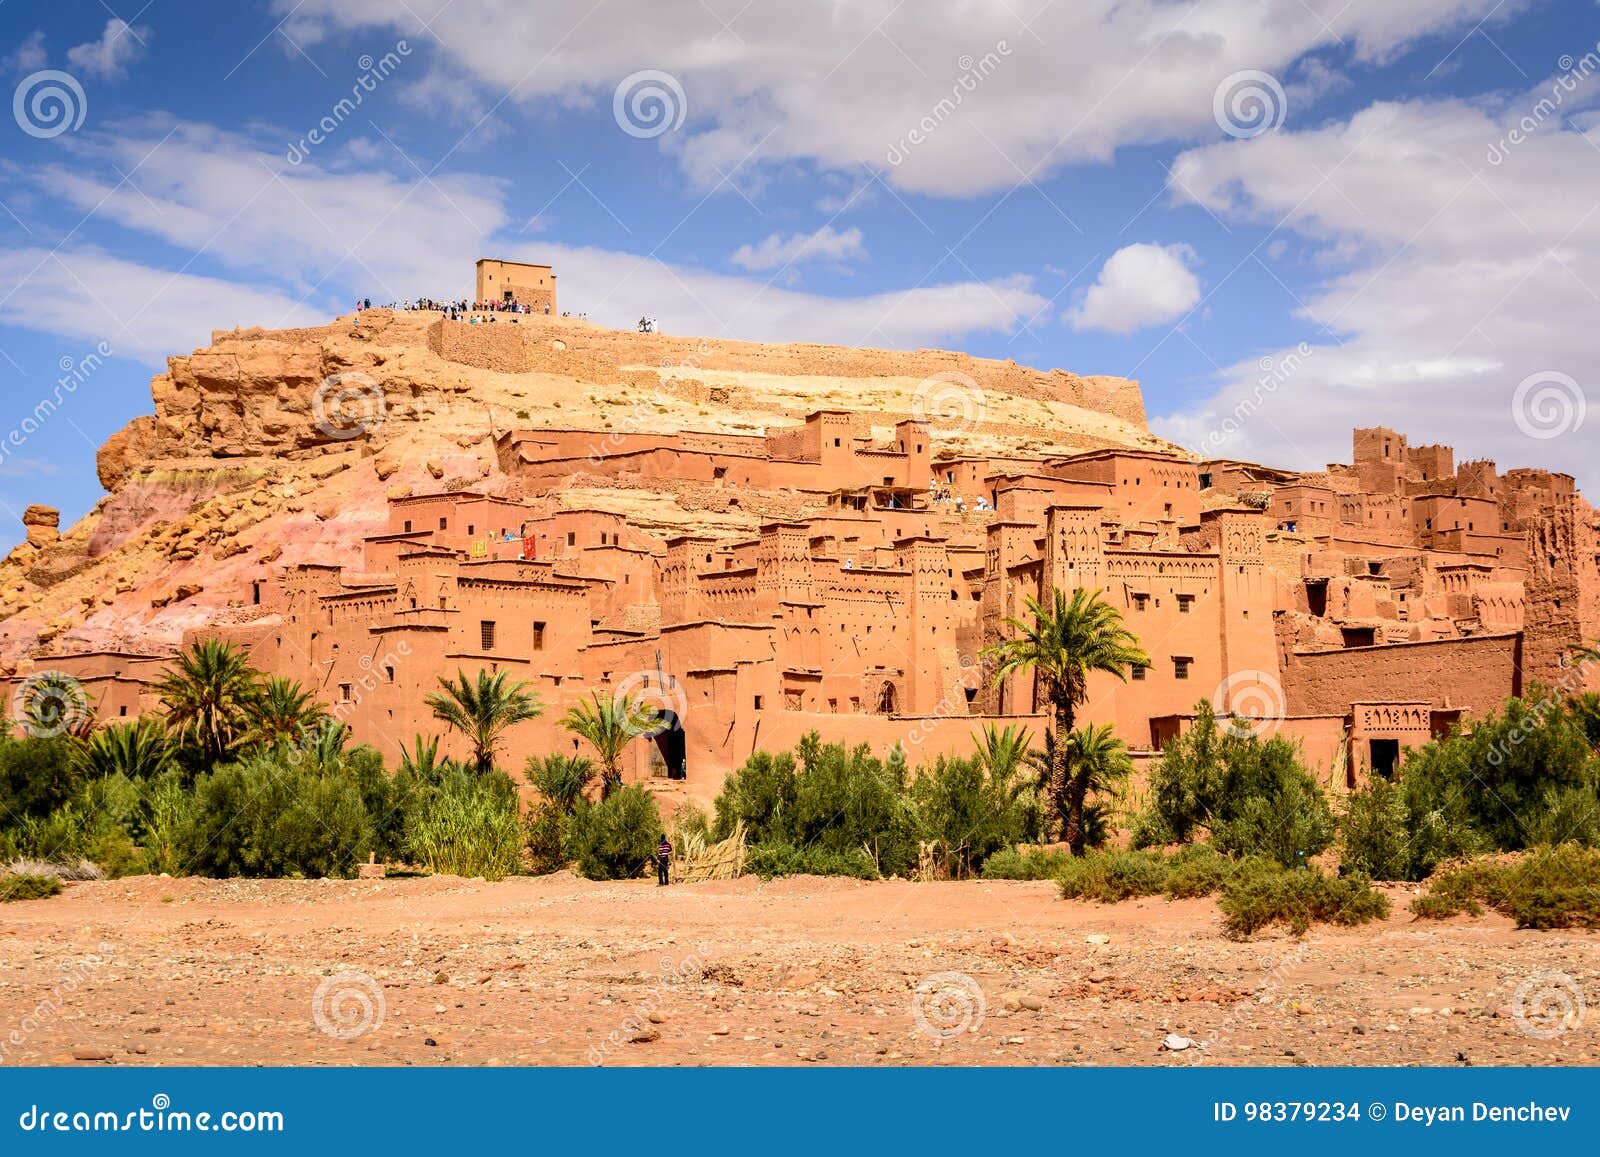 Foto panorámica de Ait Benhaddou, Marruecos - patrimonio mundial de la UNESCO